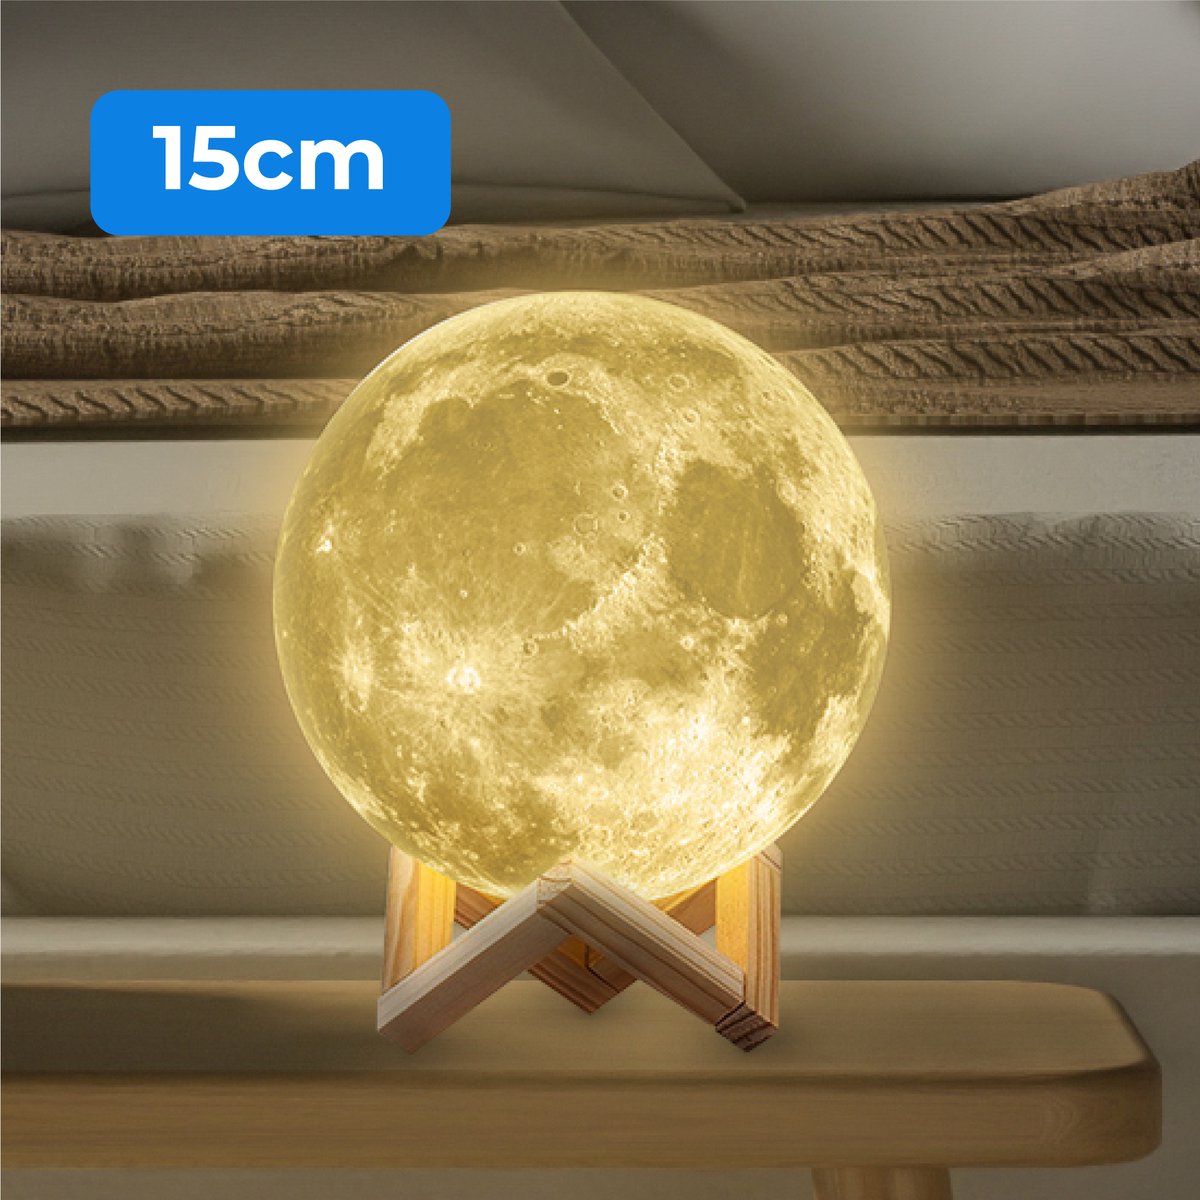 Nuvance - Maanlamp 3D Tafellamp - 15 cm - Warm Wit - Maan Lamp - Moon Lamp - Maan Lampje Babykamer - Nachtlampje Kinderen voor Slaapkamer